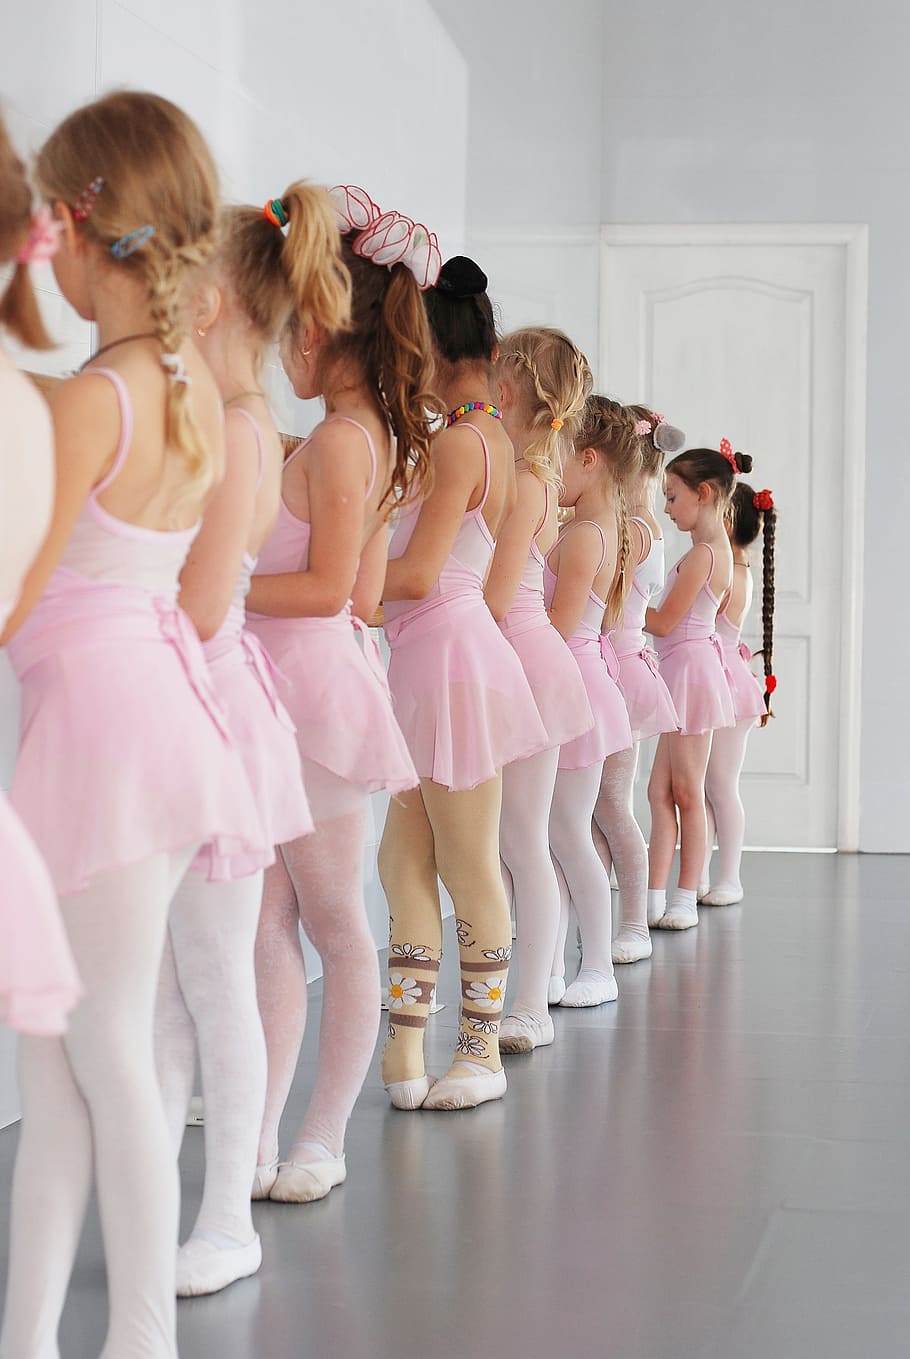 https://c1.wallpaperflare.com/preview/717/768/991/ballet-ballerina-ballet-tutu-dancer.jpg